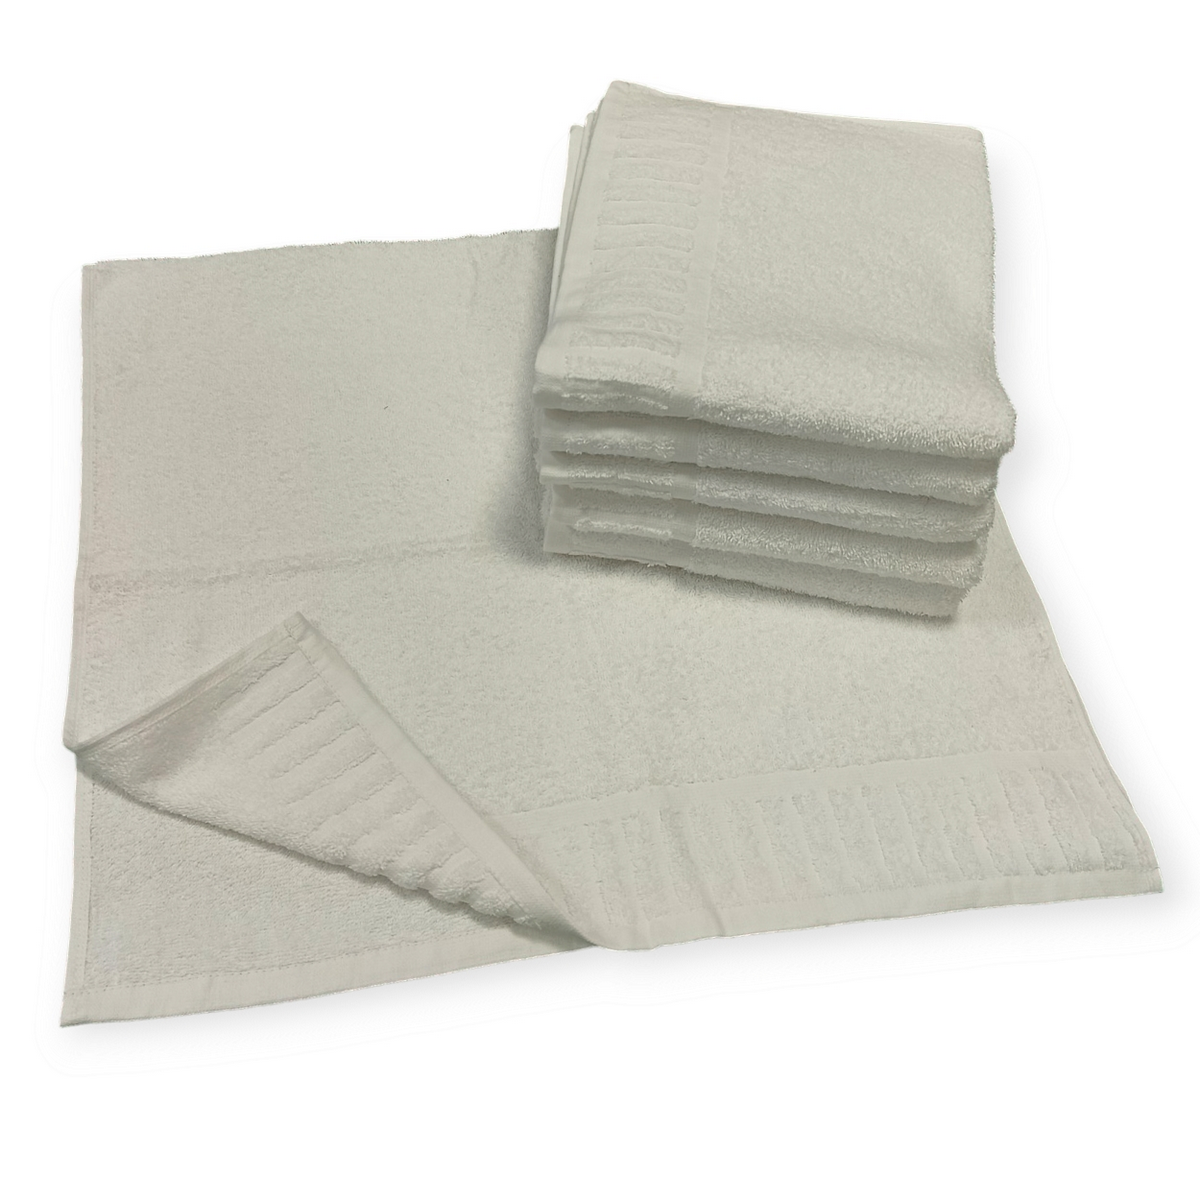 Asciugamani Premium per B&B e Case Vacanza - Morbidezza e Resistenza Superiori